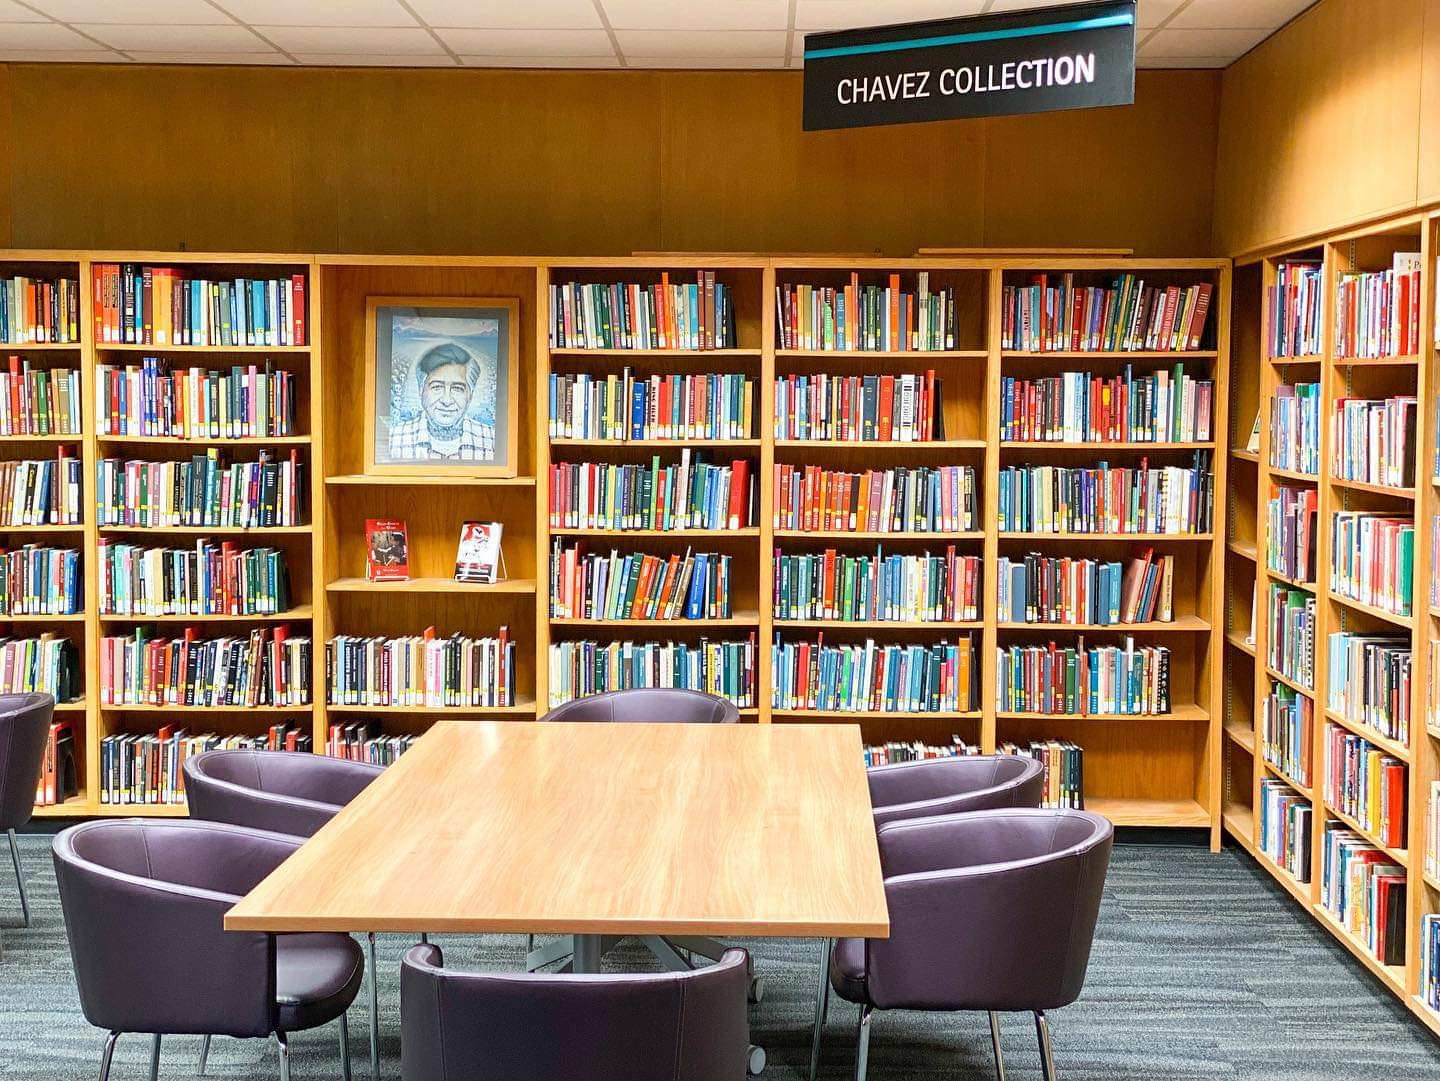 César Chávez Collection at MSU Libraries